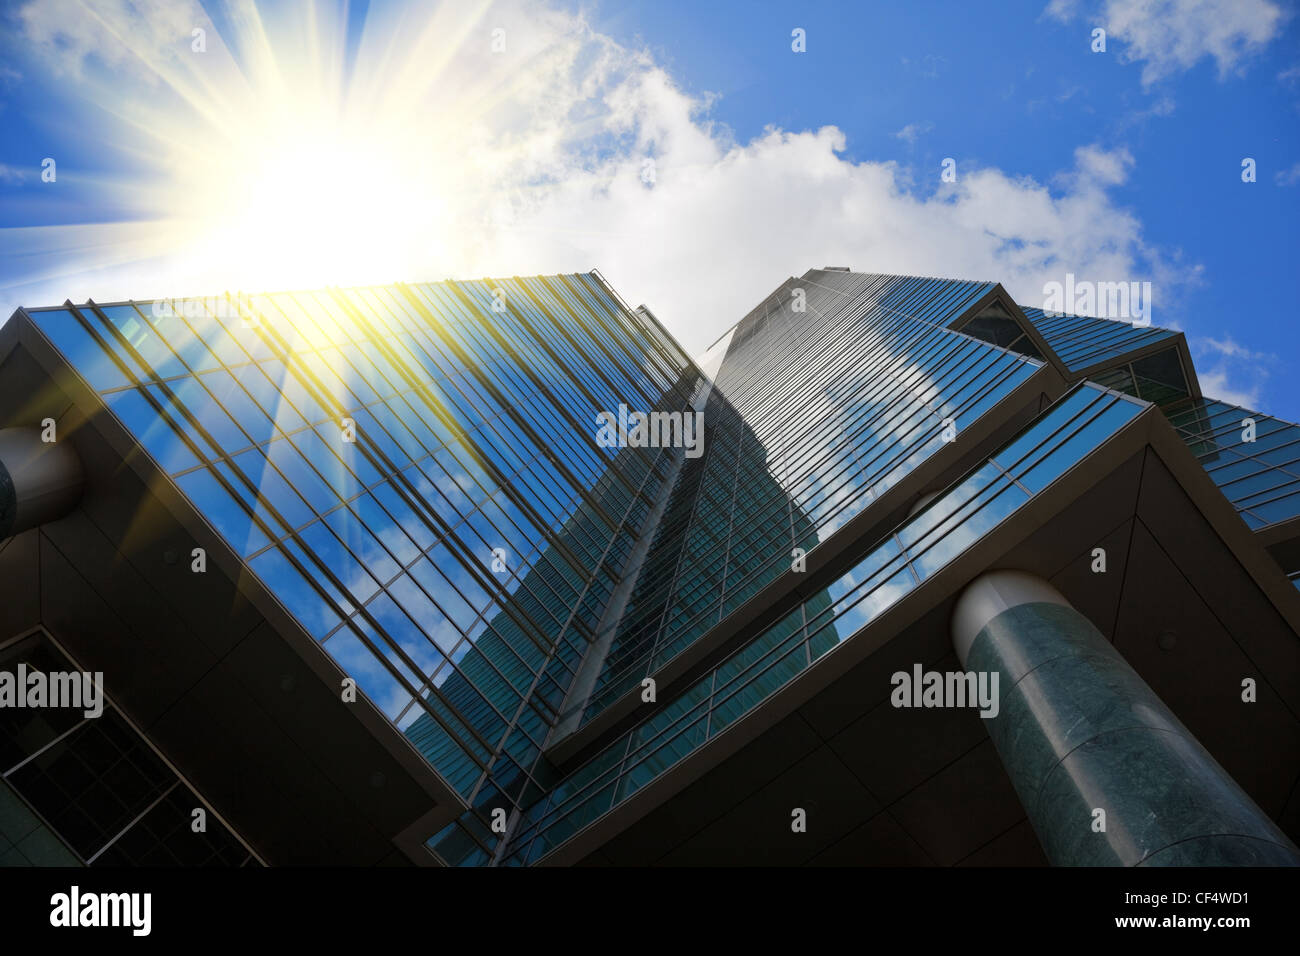 Spiegel-Bürogebäude in High-Tech-Stil, blauer Himmel mit Wolken reflektiert Sonnenstrahlen hier Stockfoto